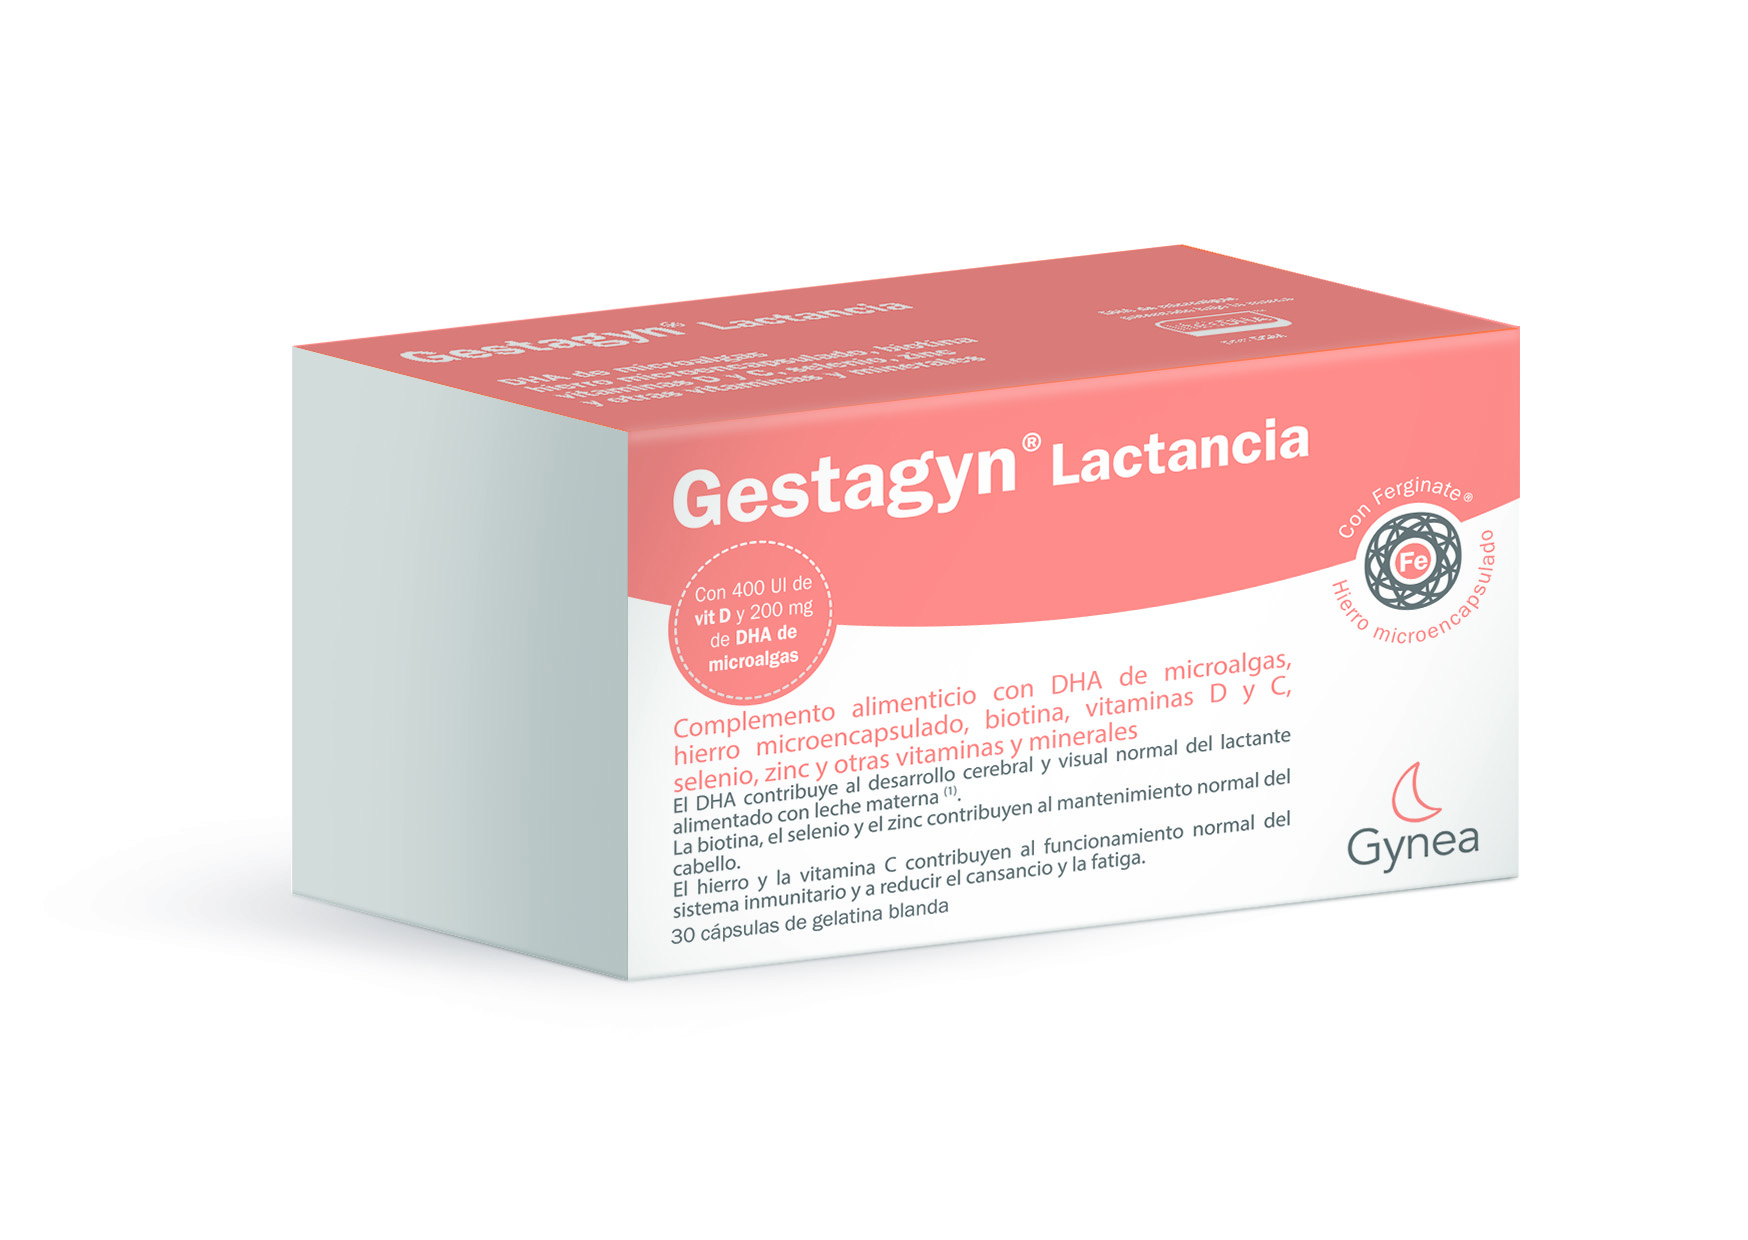 Gestagyn Lactancia – Mater Training